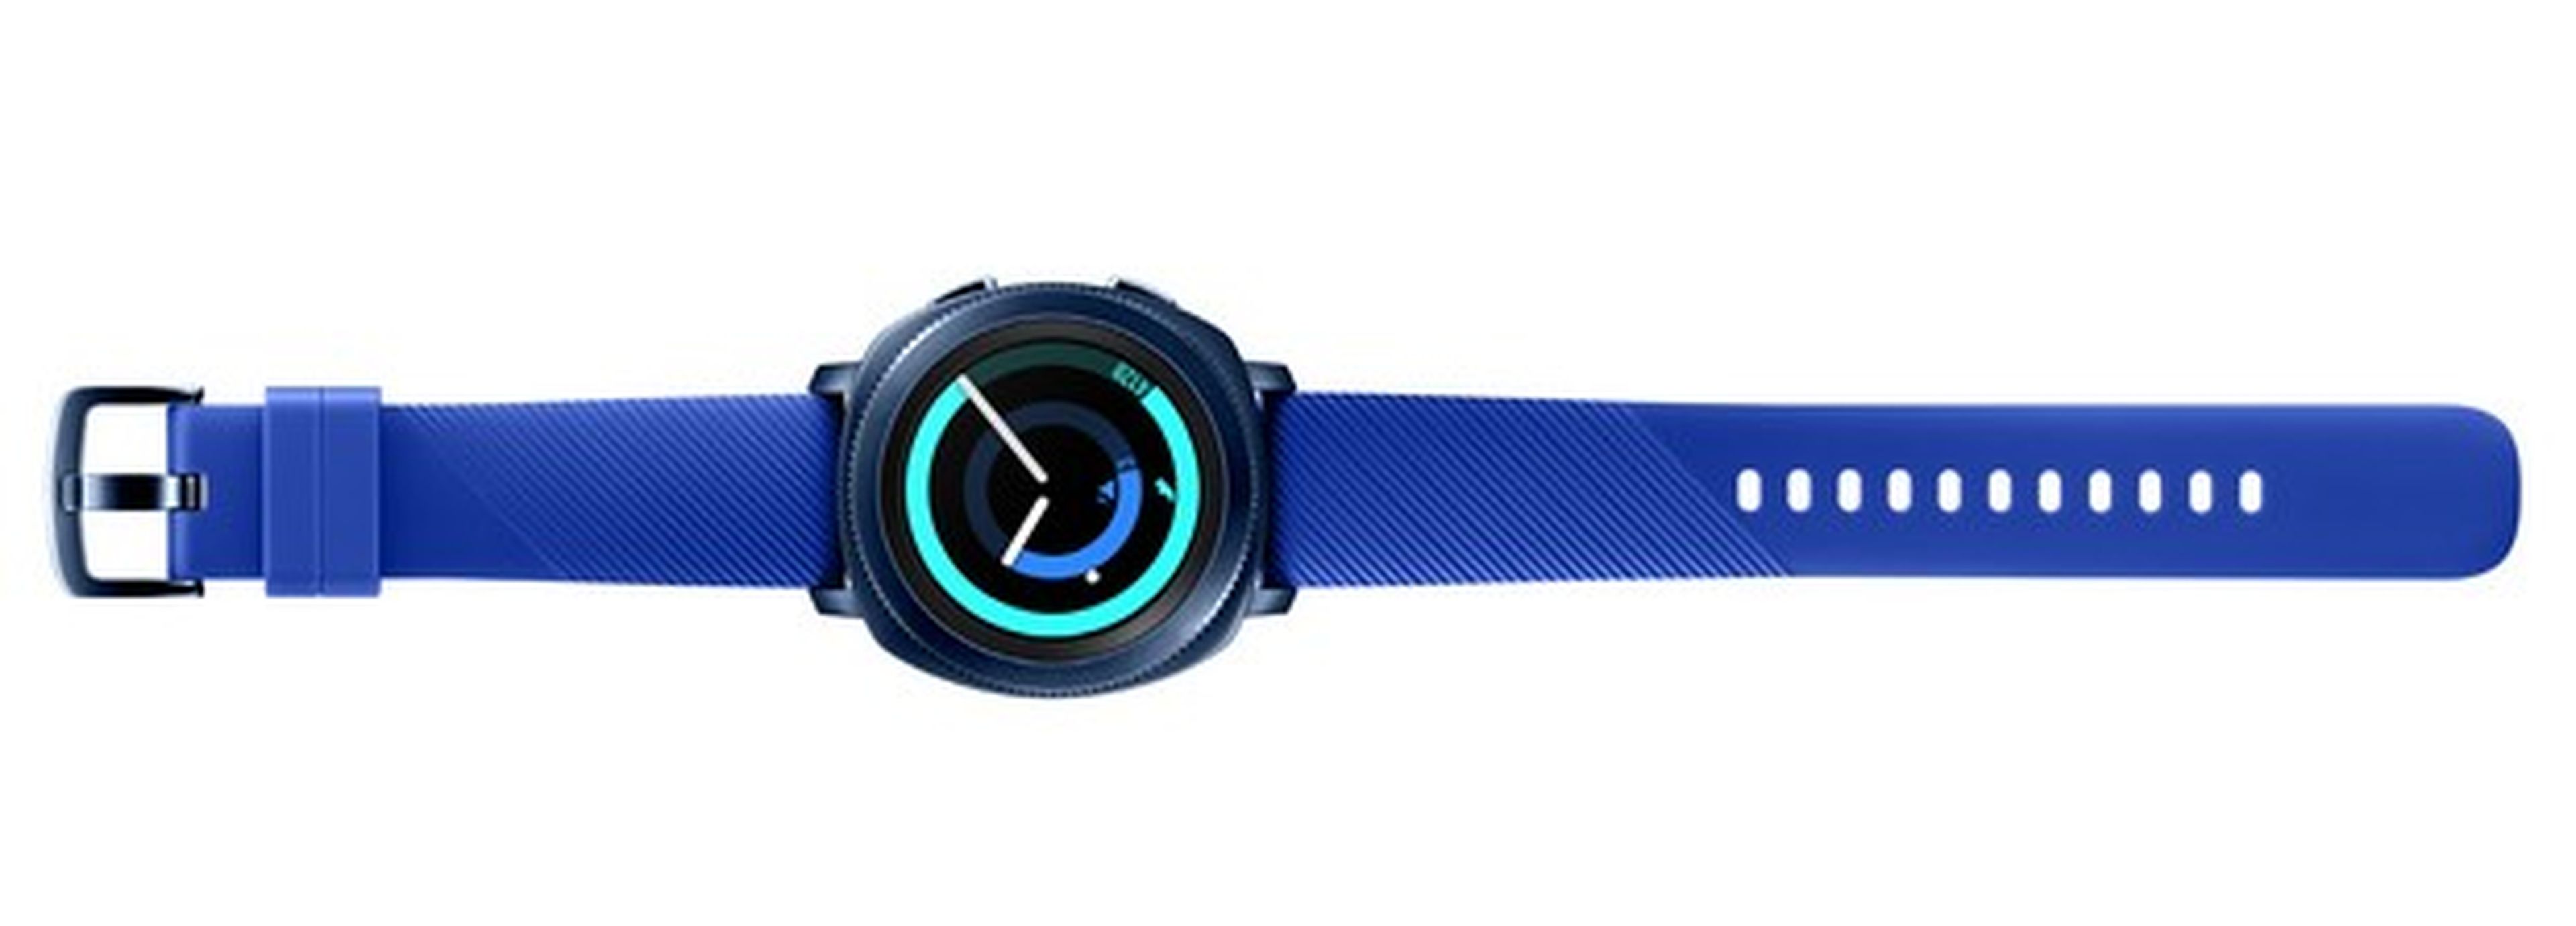 Samsung Gear Sport, el nuevo smartwatch resistente al agua